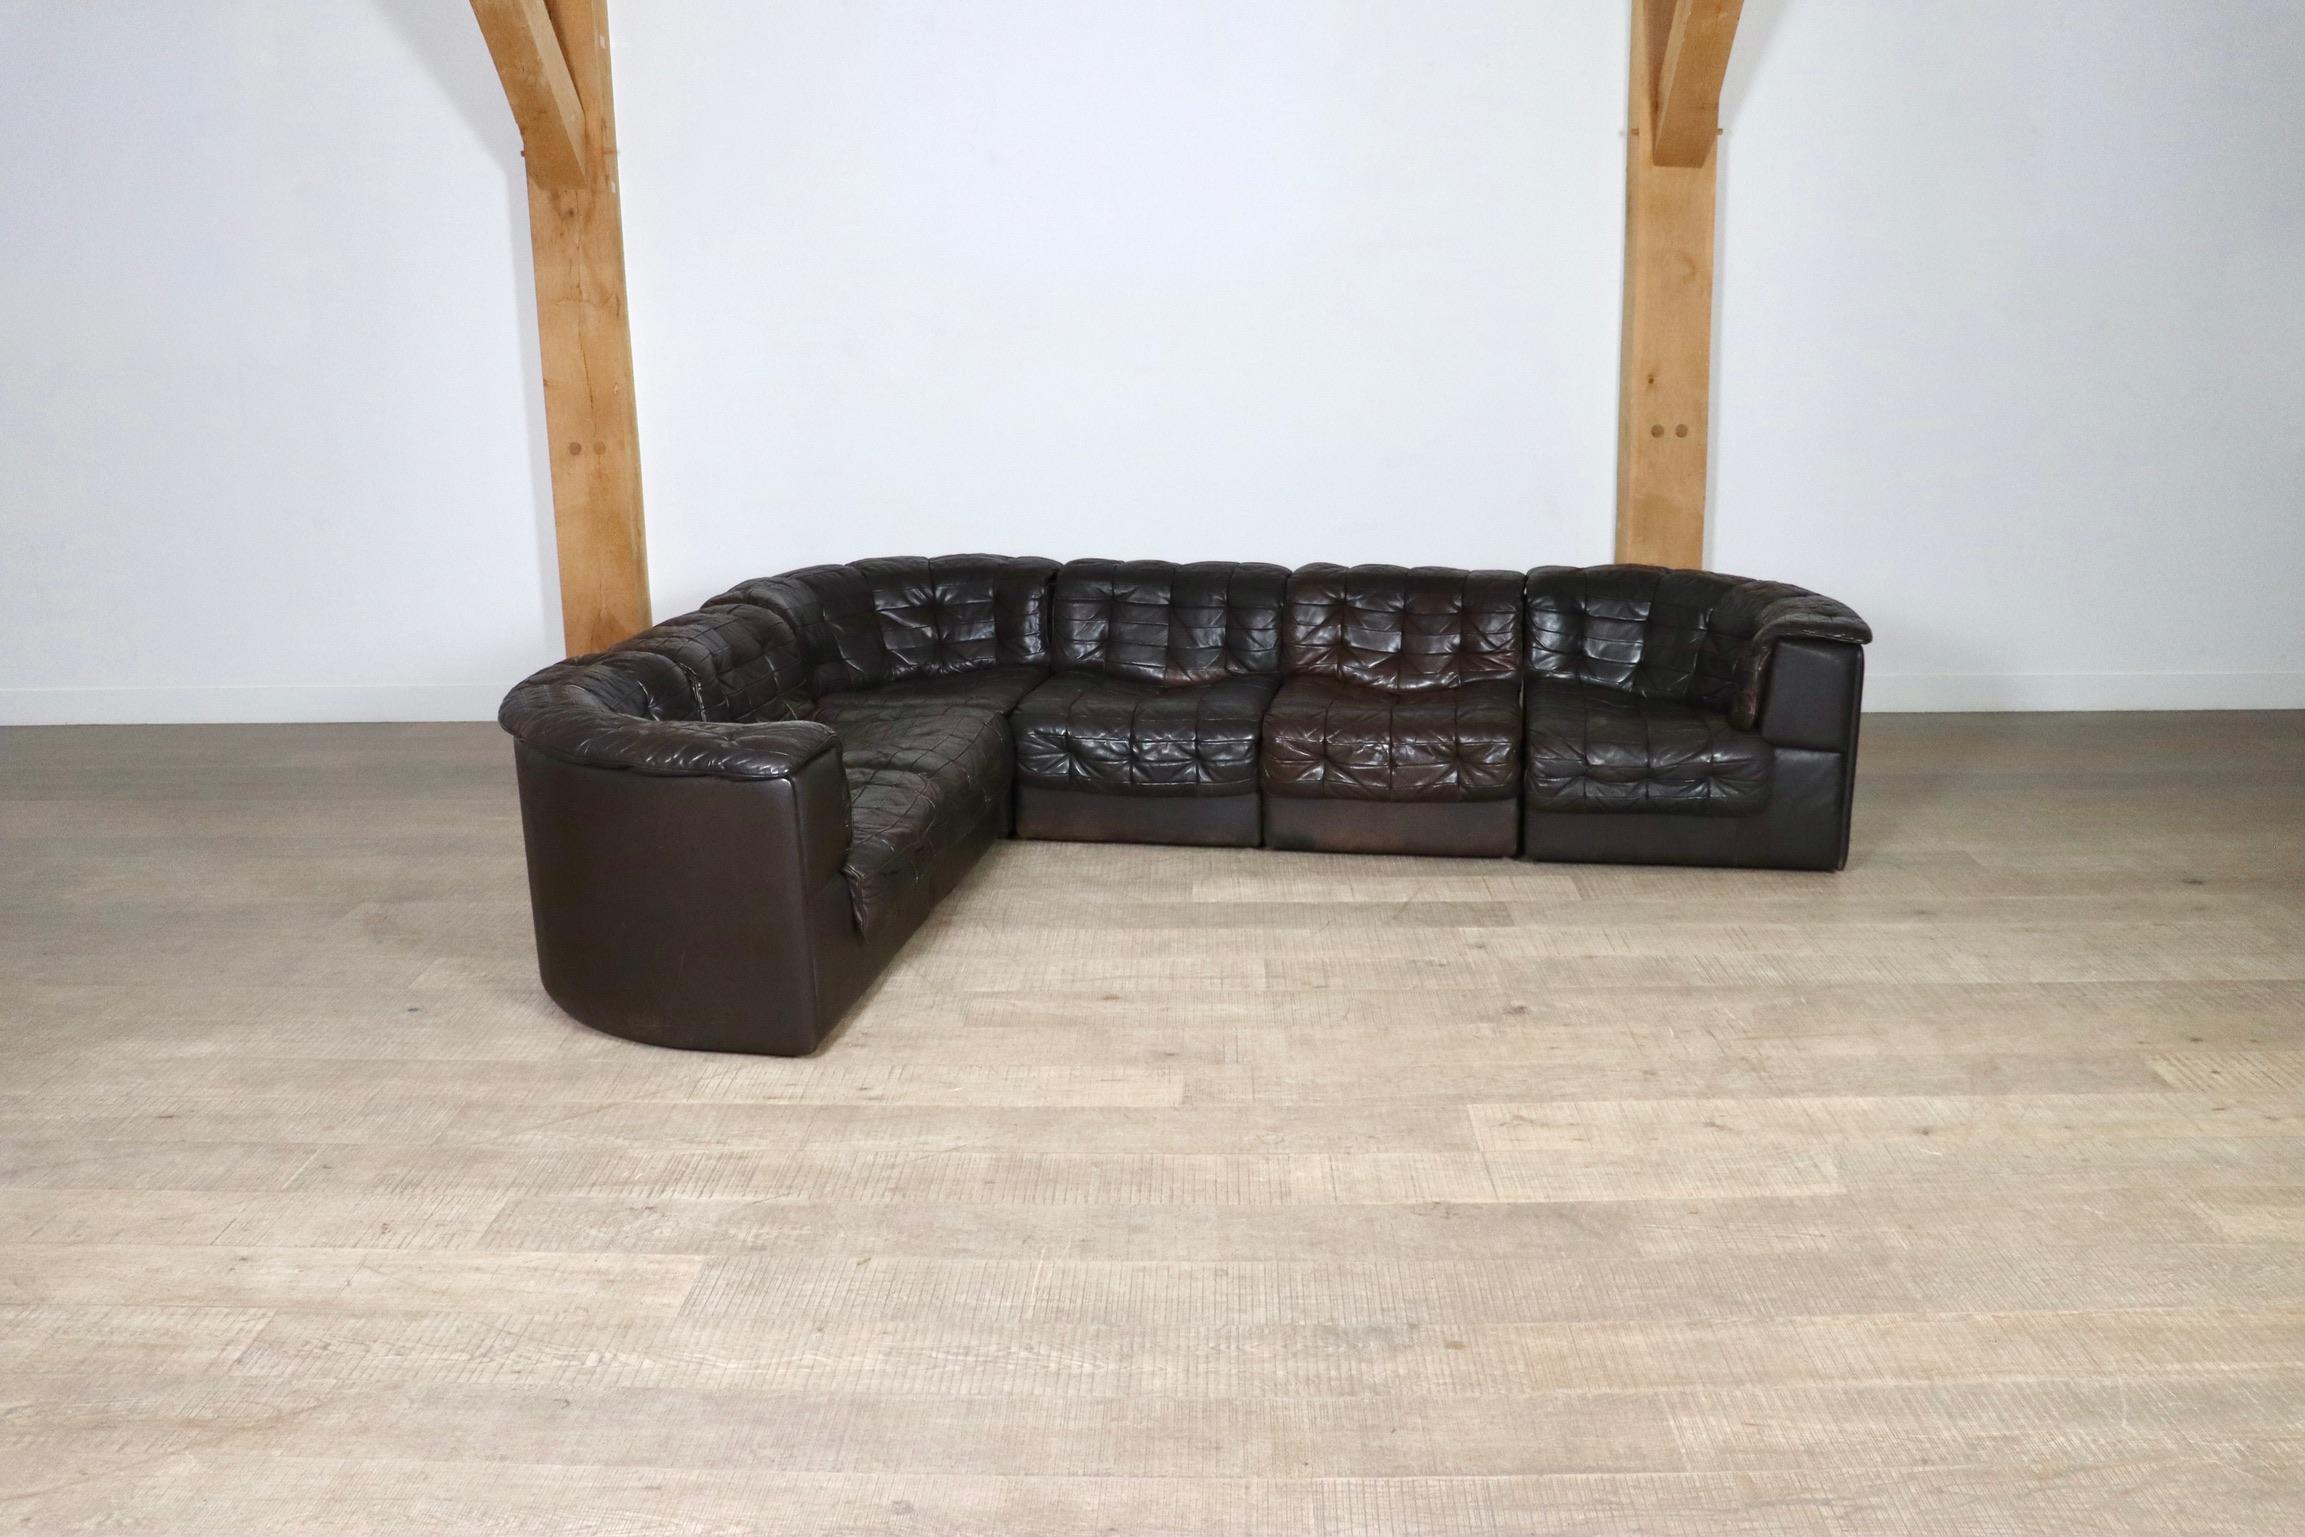 De Sede DS 11 modulares Sofa in dunkelbraunem Patchwork-Leder, 1970er Jahre. Dieses Set besteht aus sechs Elementen, von denen zwei mit einer Armlehne ausgestattet sind. De Sede ist berühmt für seine hohe Qualität, wofür dieses Sofa das perfekte